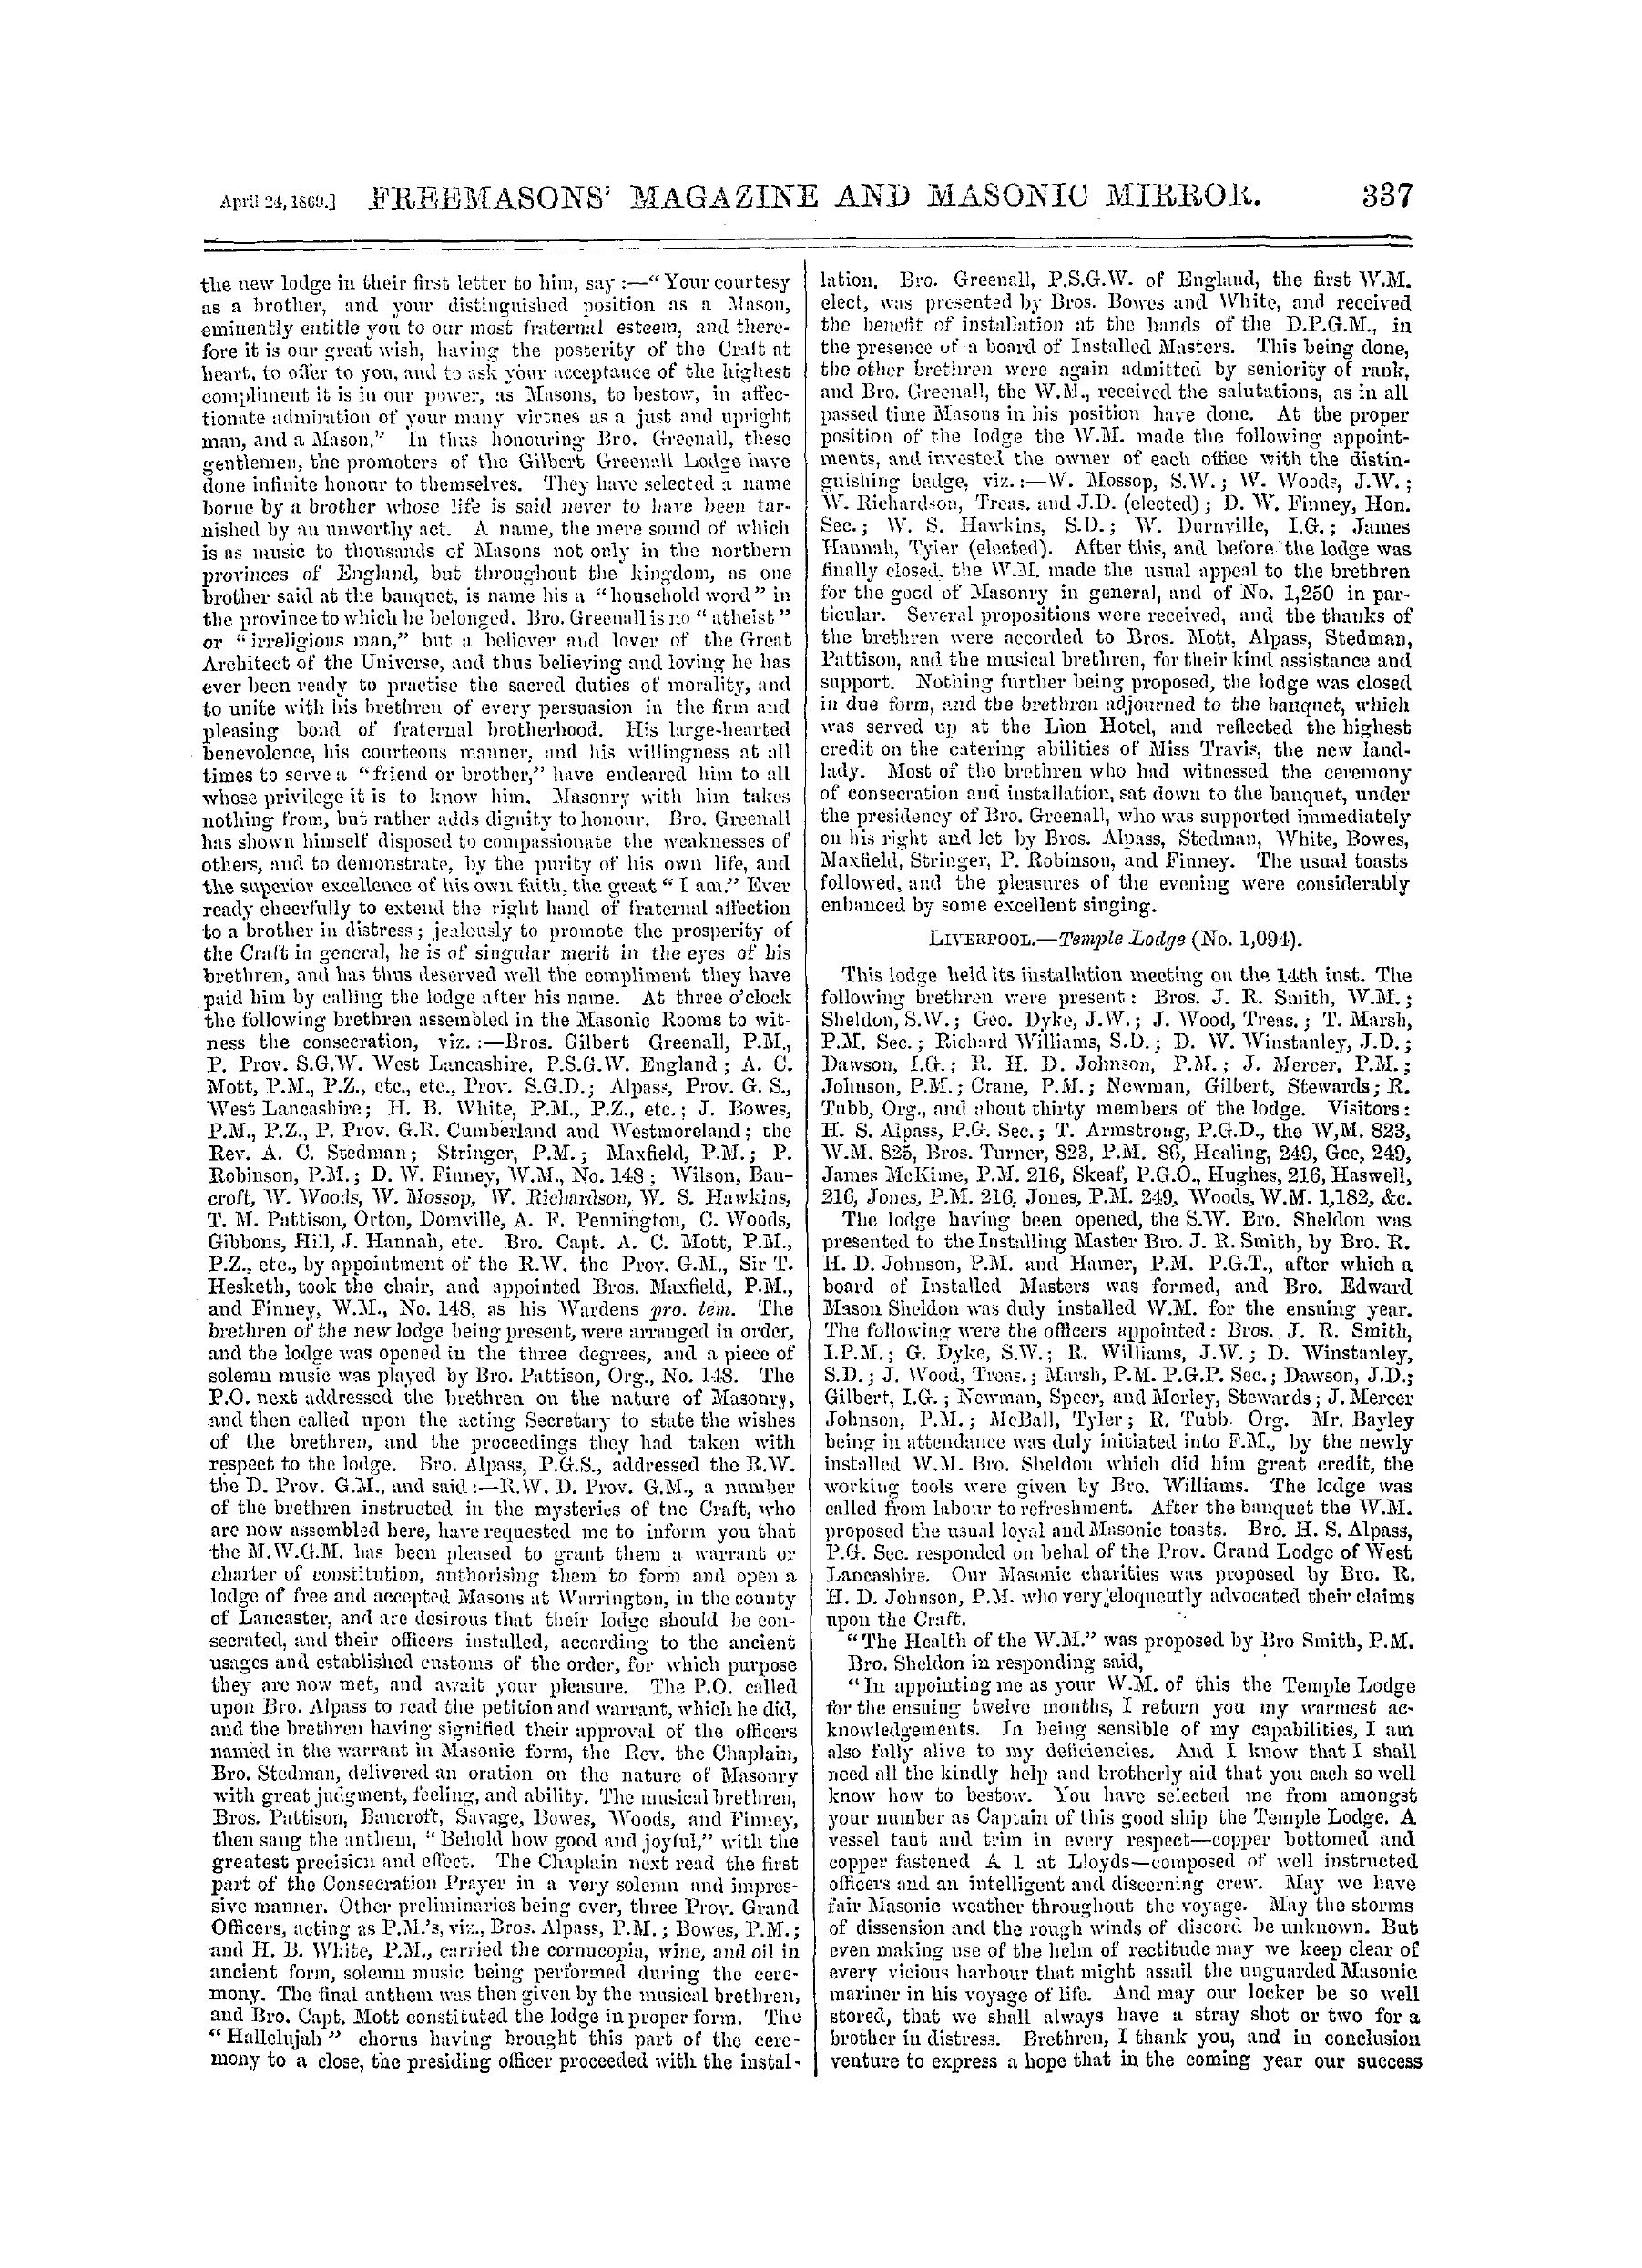 The Freemasons' Monthly Magazine: 1869-04-24: 17